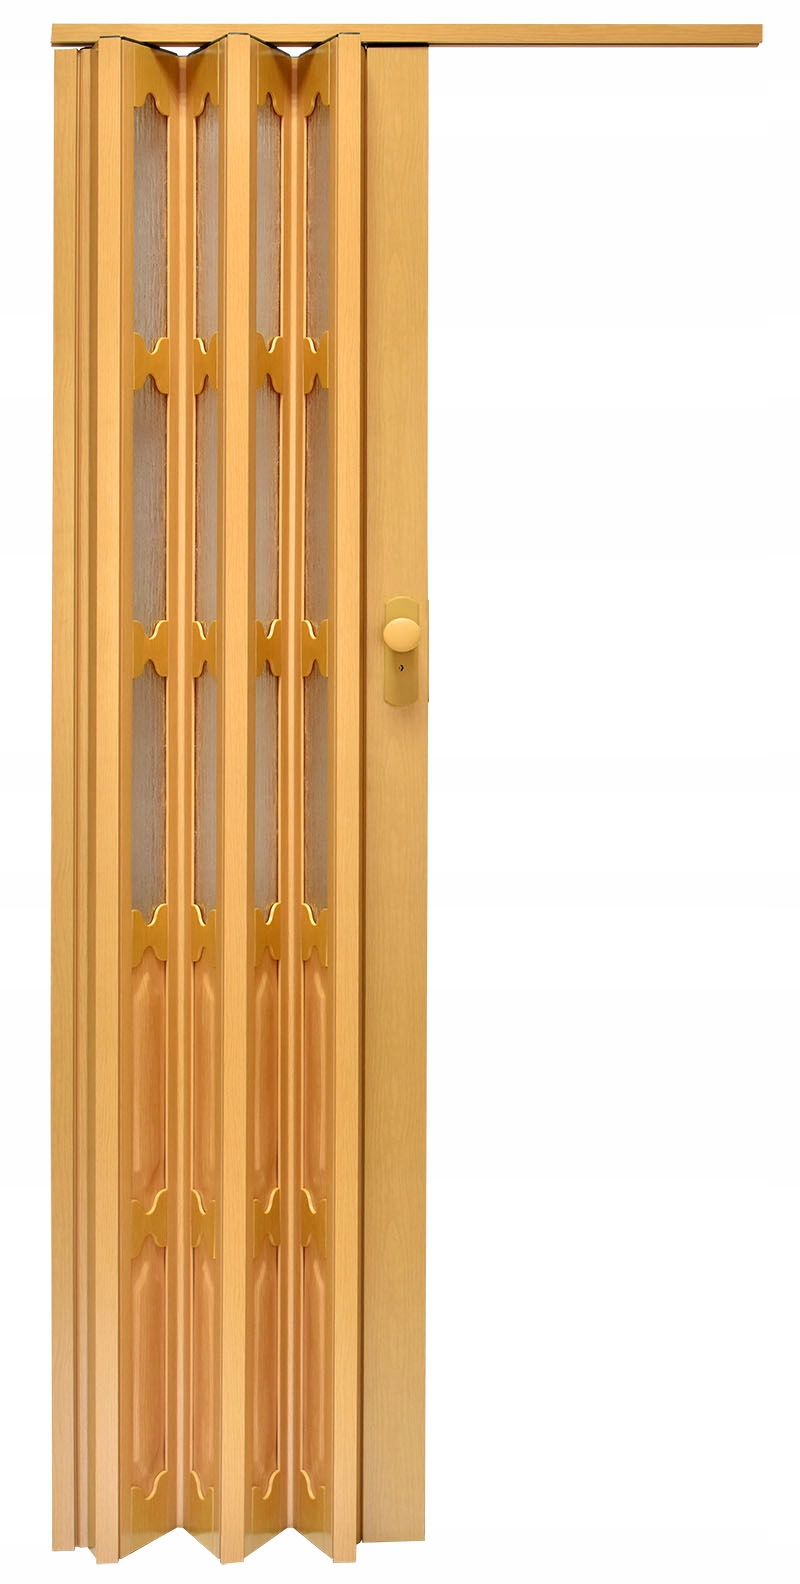 Drzwi harmonijkowe tanio